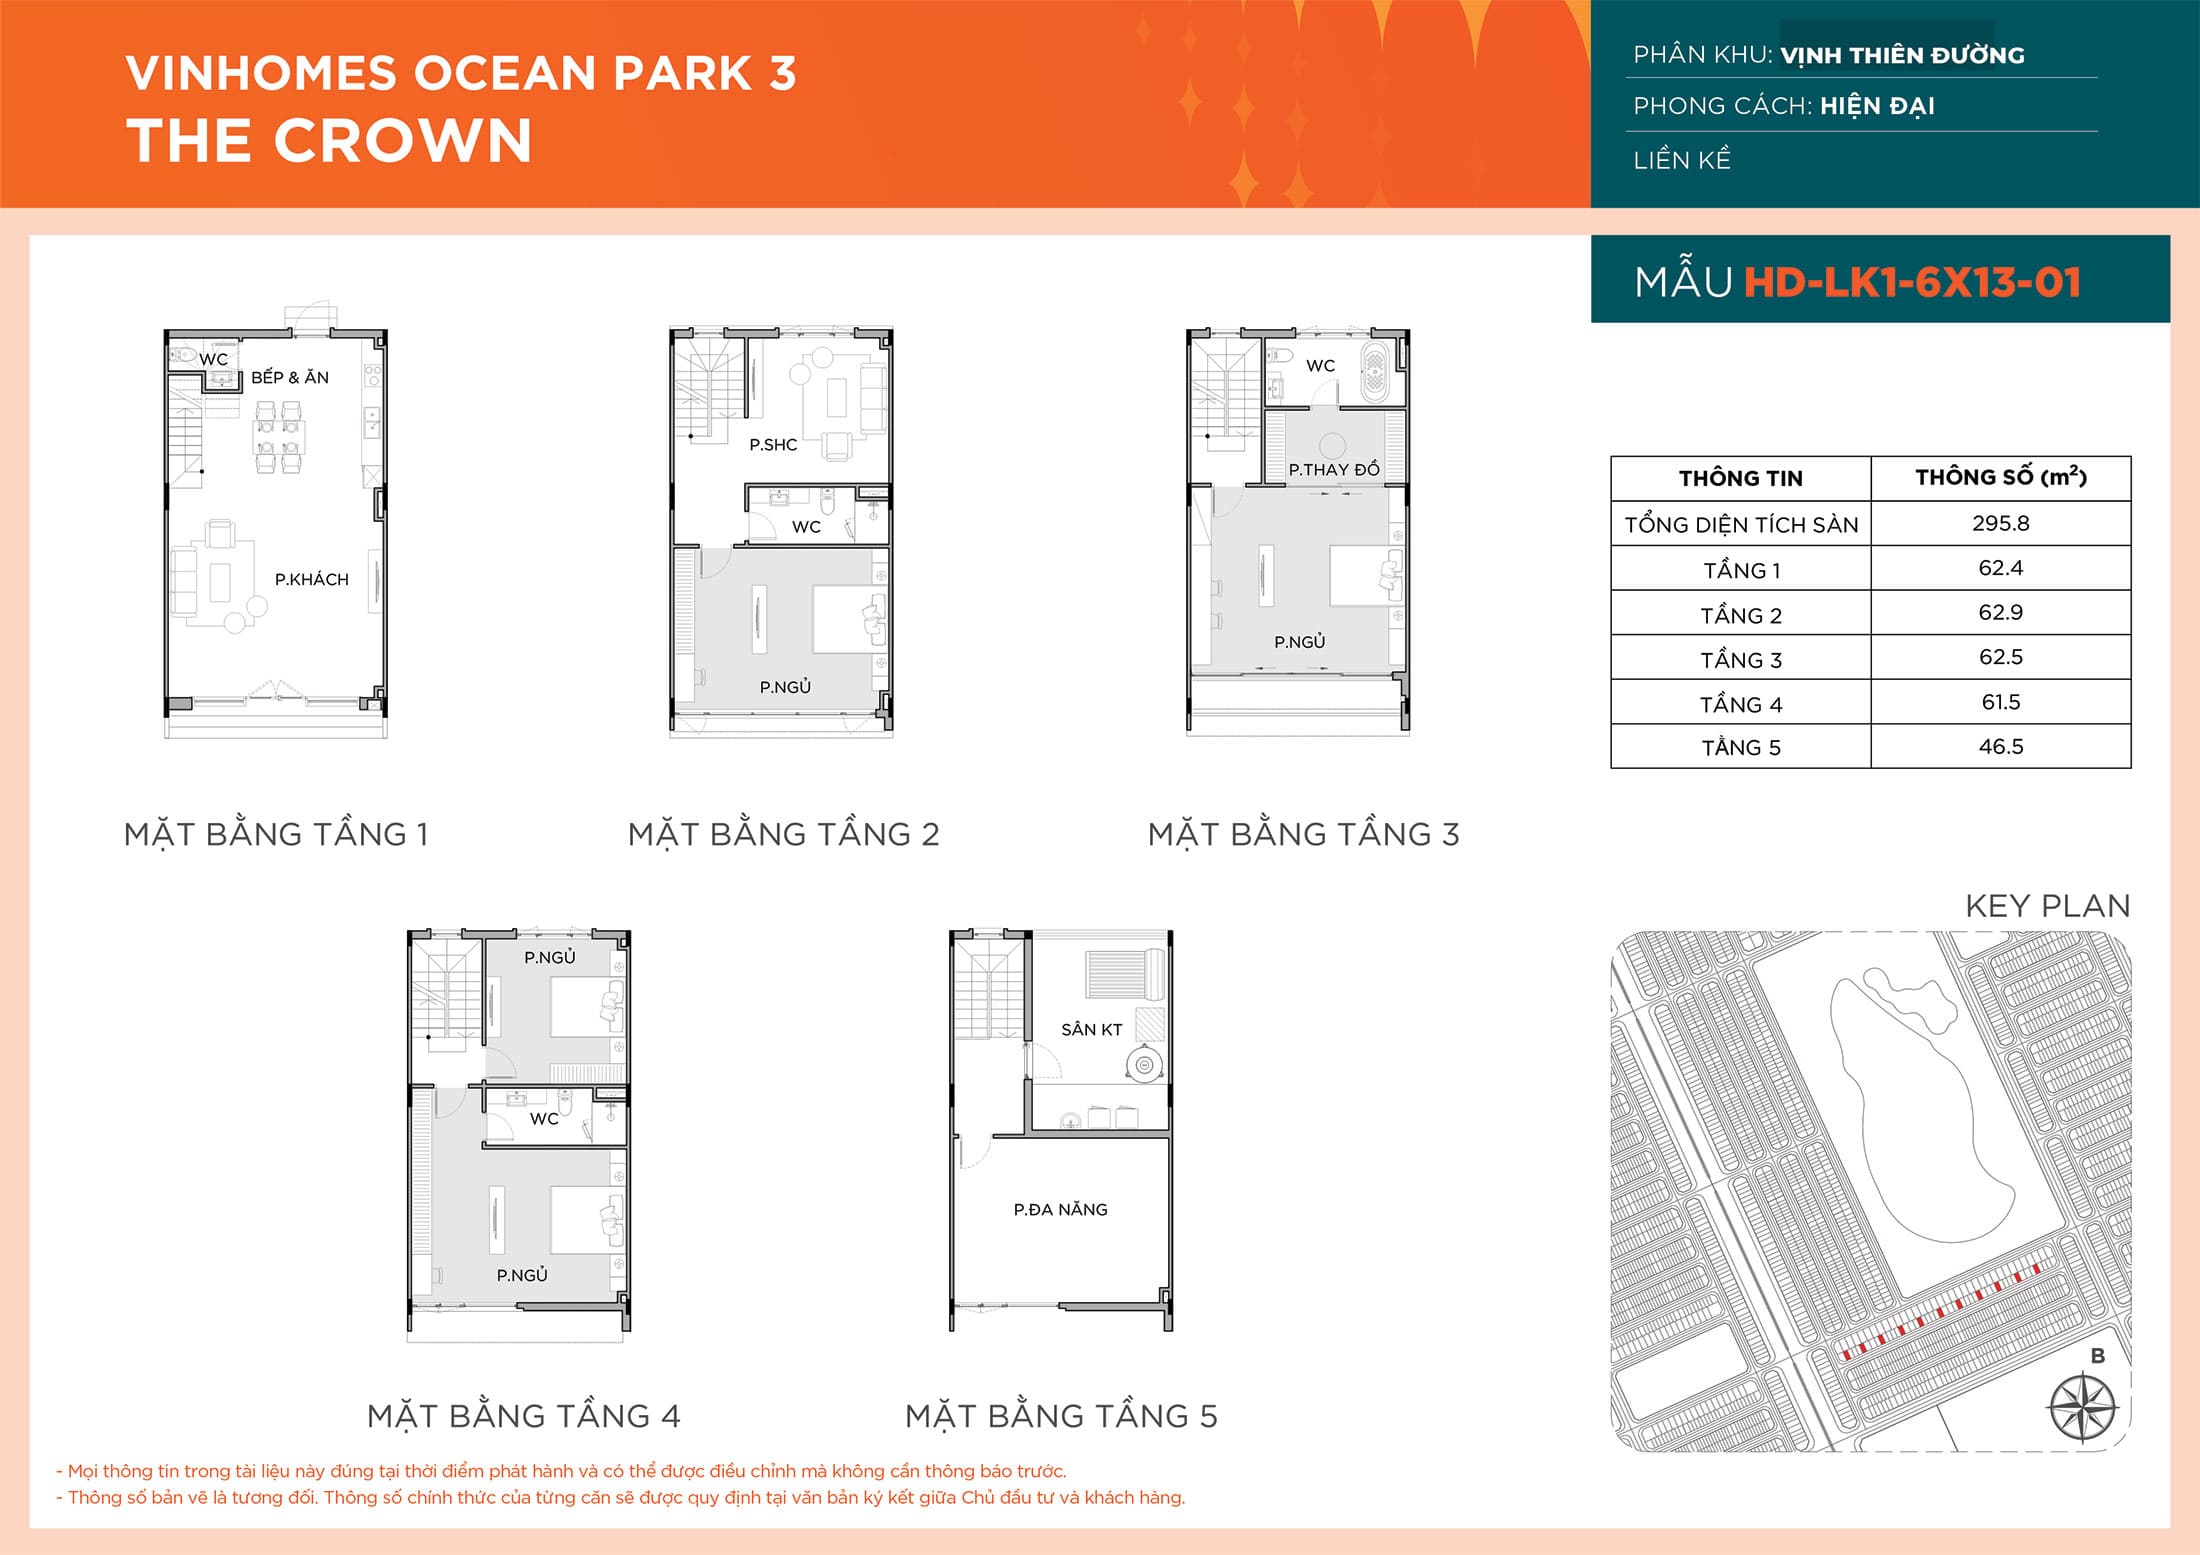 Layout thiết kế Liền Kề HD-LK1-6X13-01 phân khu Vịnh Thiên Đường dự án Vinhomes Ocean Park 3 - The Crown.